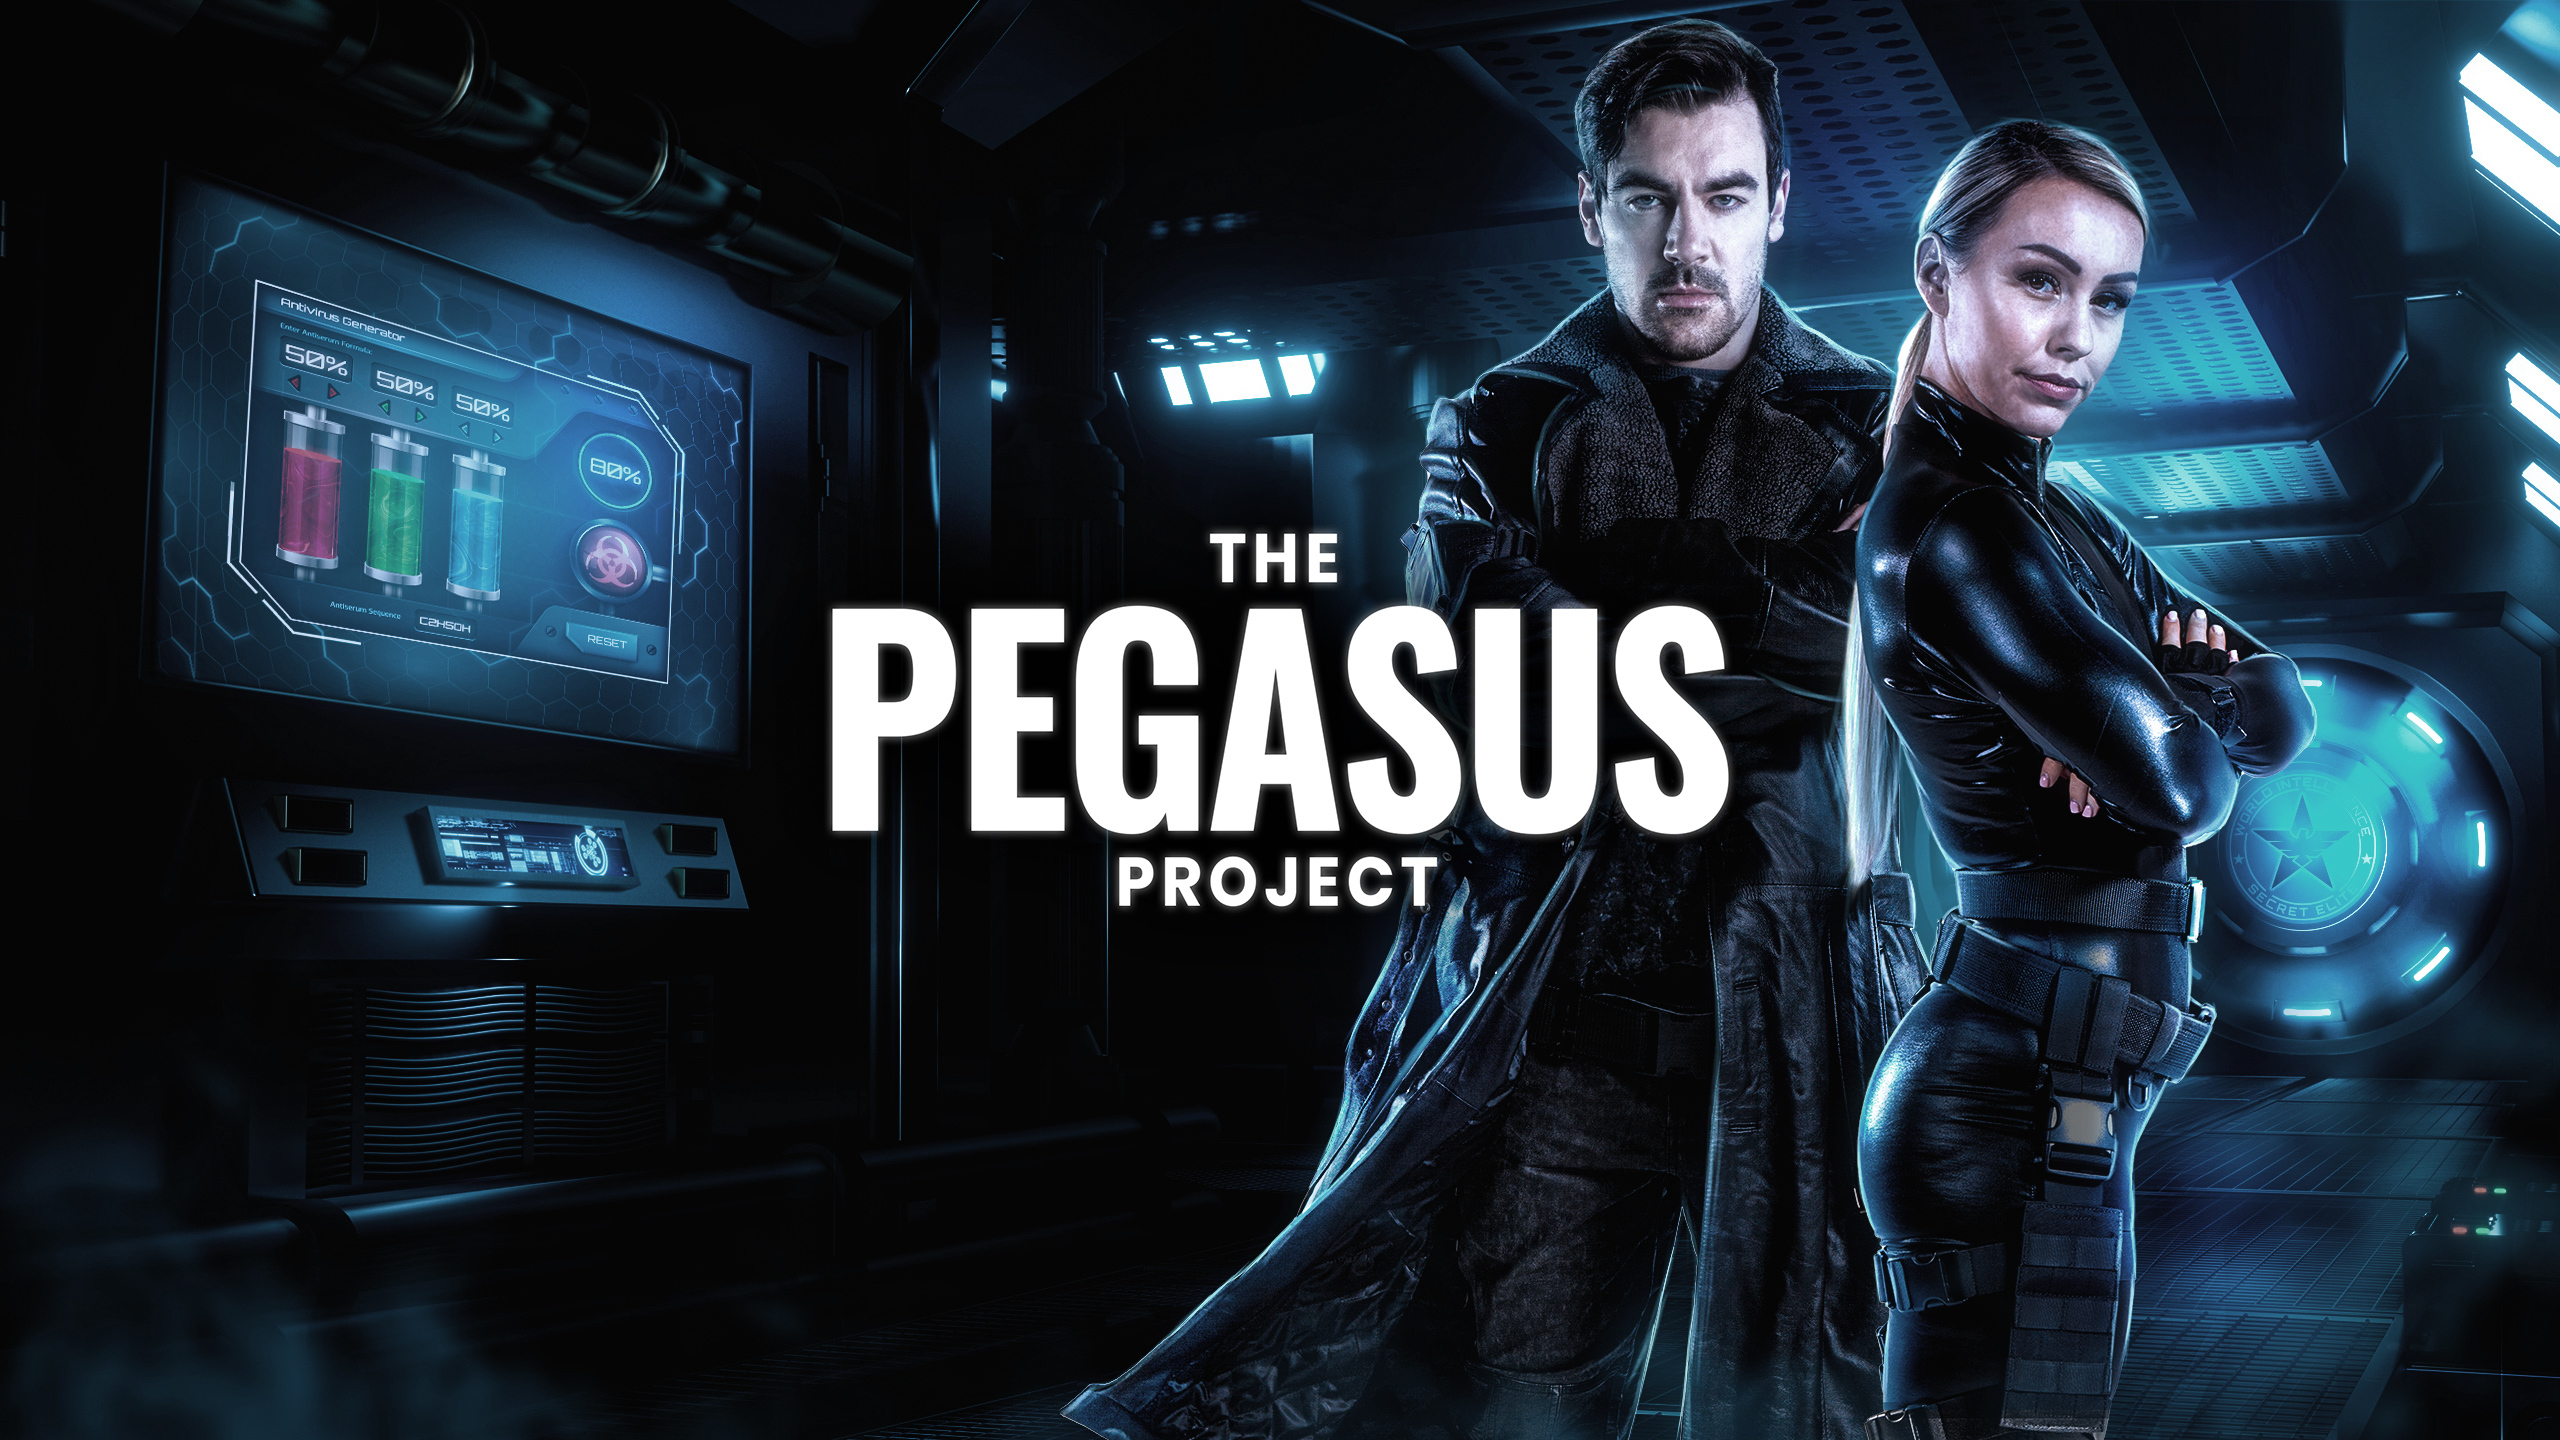 Teamuitje Scheveningen: Online escape game The Pegasus